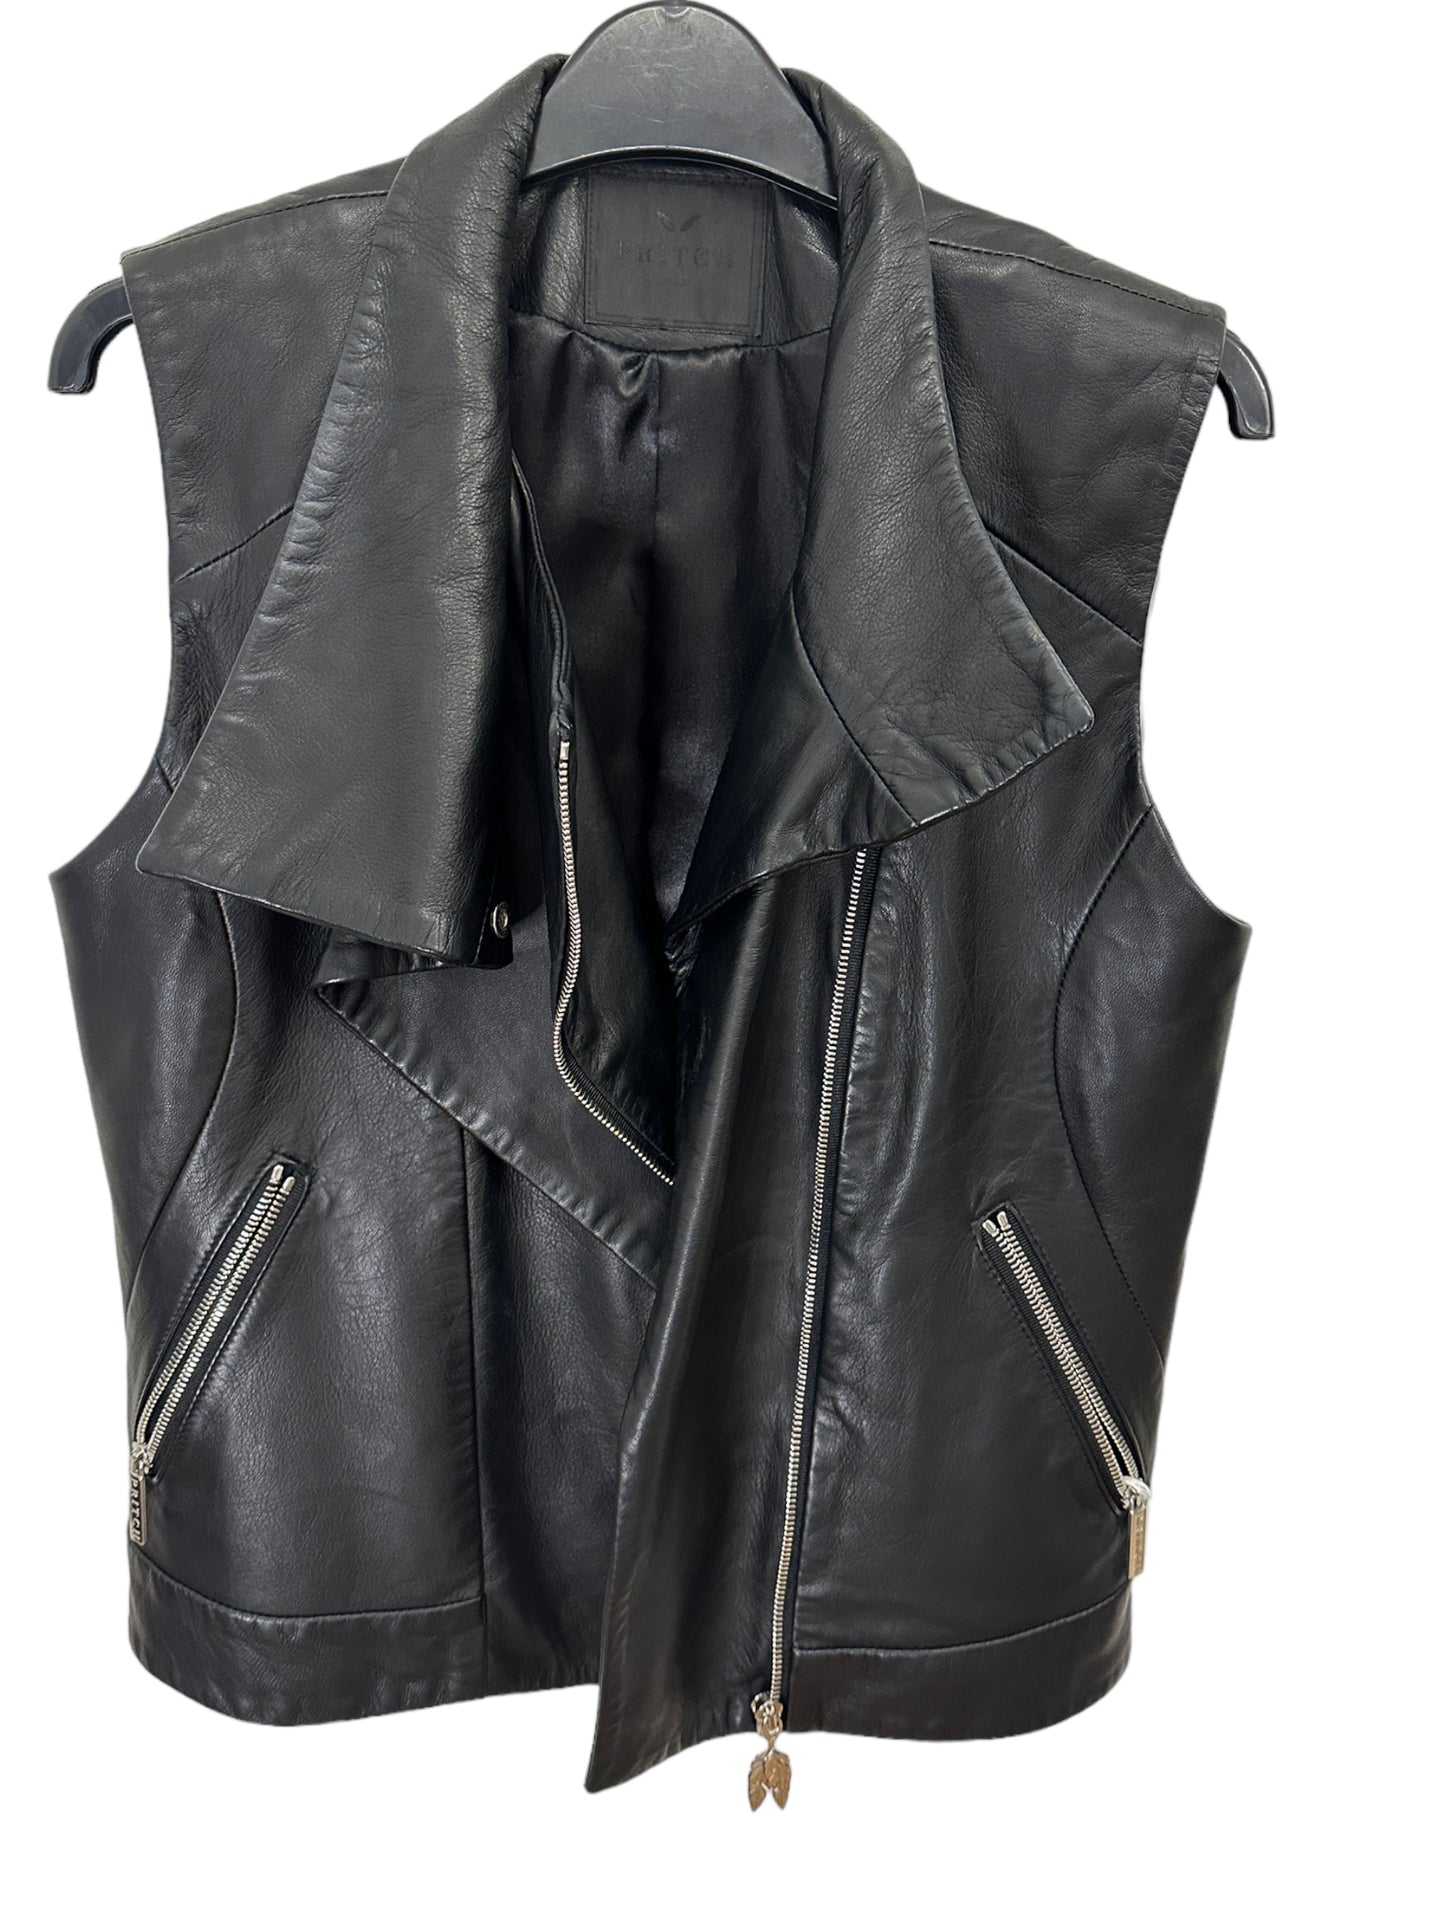 PRITCH London -  Leather Vest - Size S/M